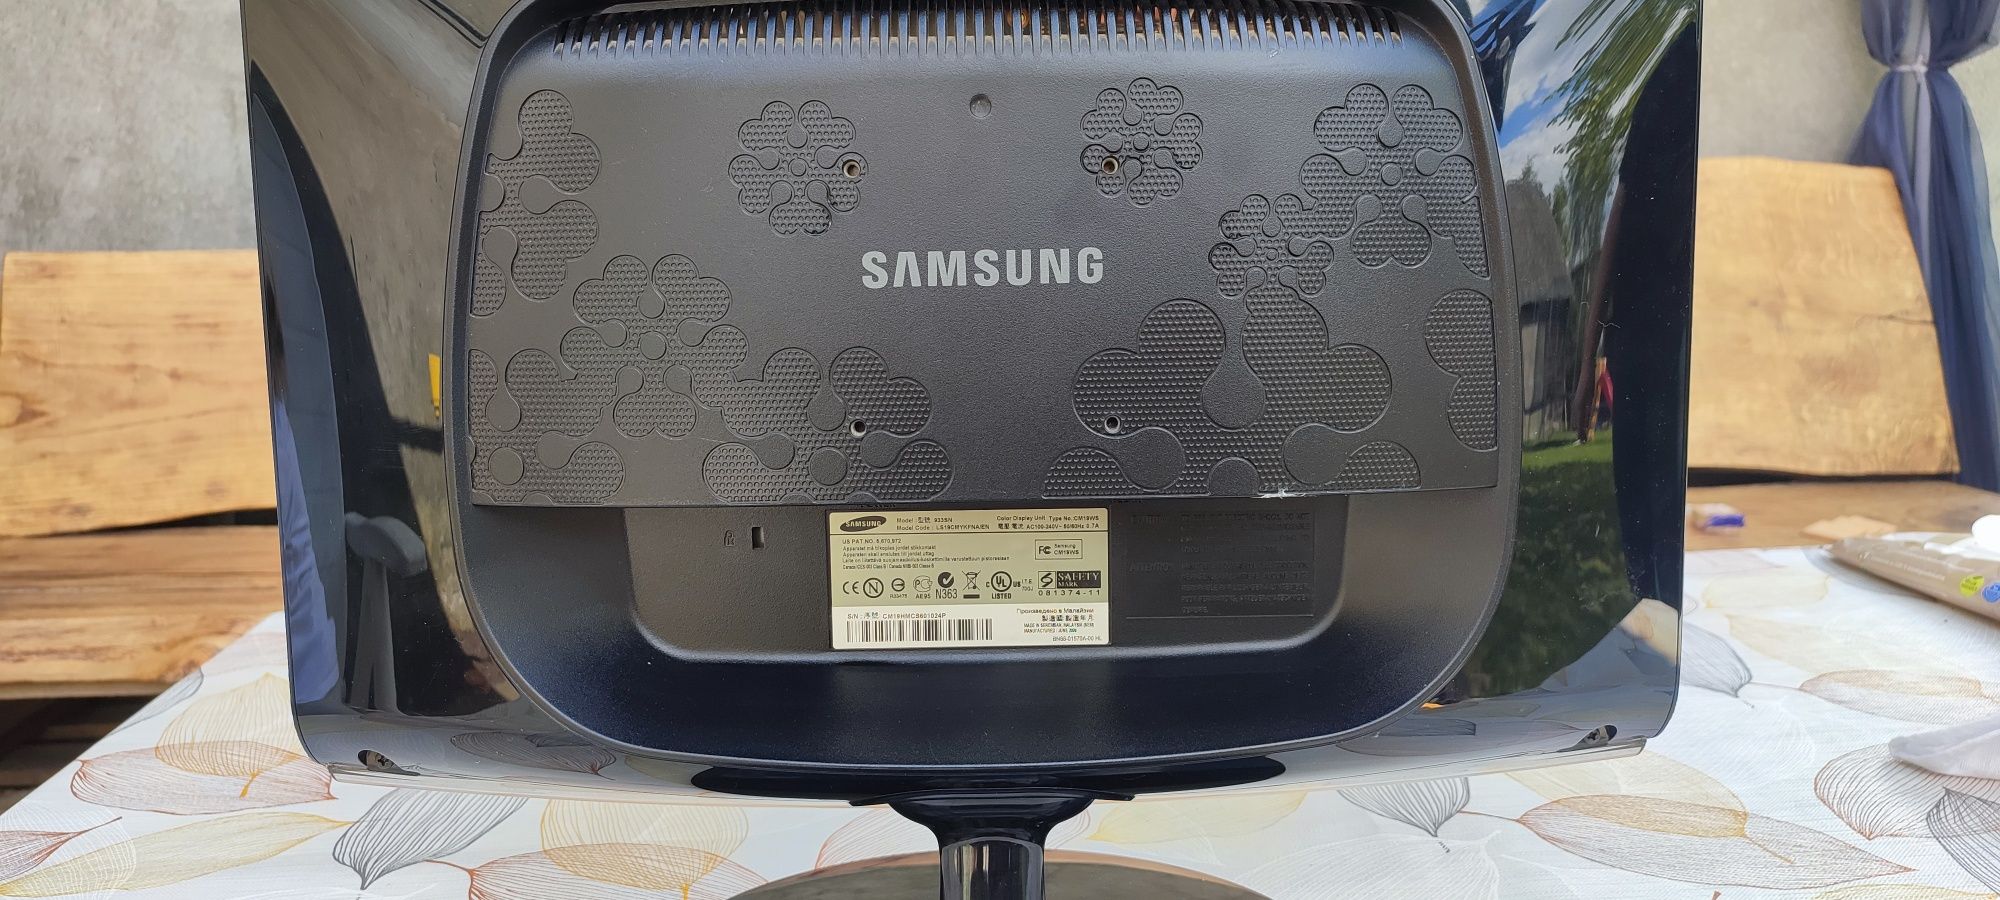 Sprzedam monitor Samsung 19 calowy